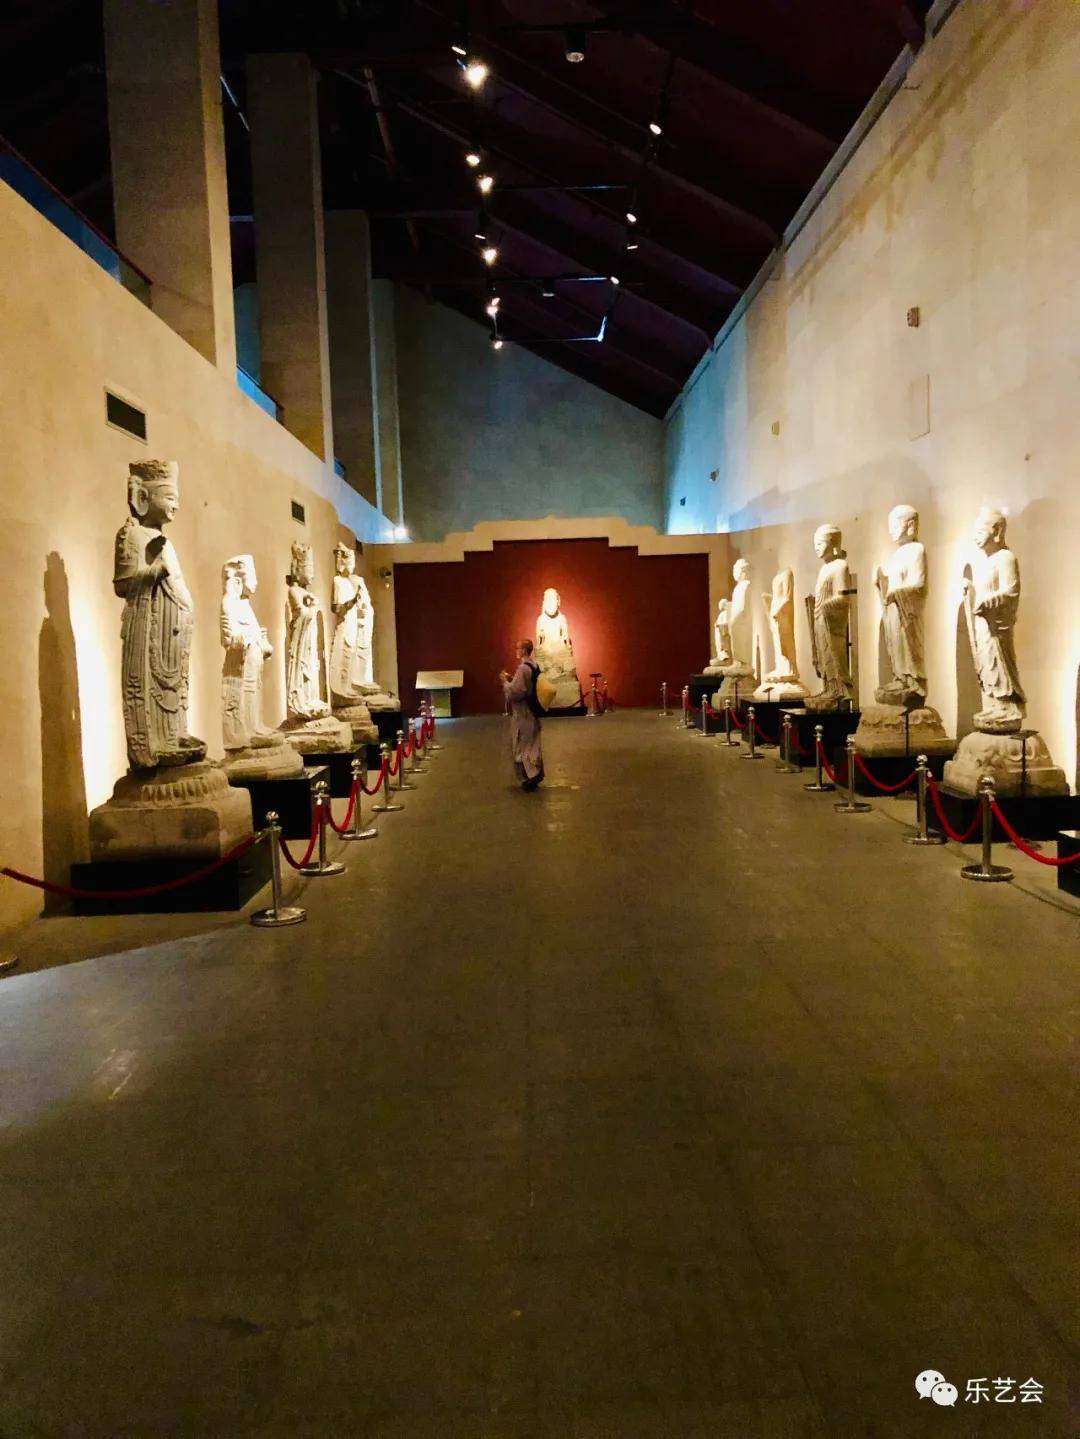 长安佛韵石刻艺术馆展出西安碑林精选出的151件佛教造像,陈列分众生